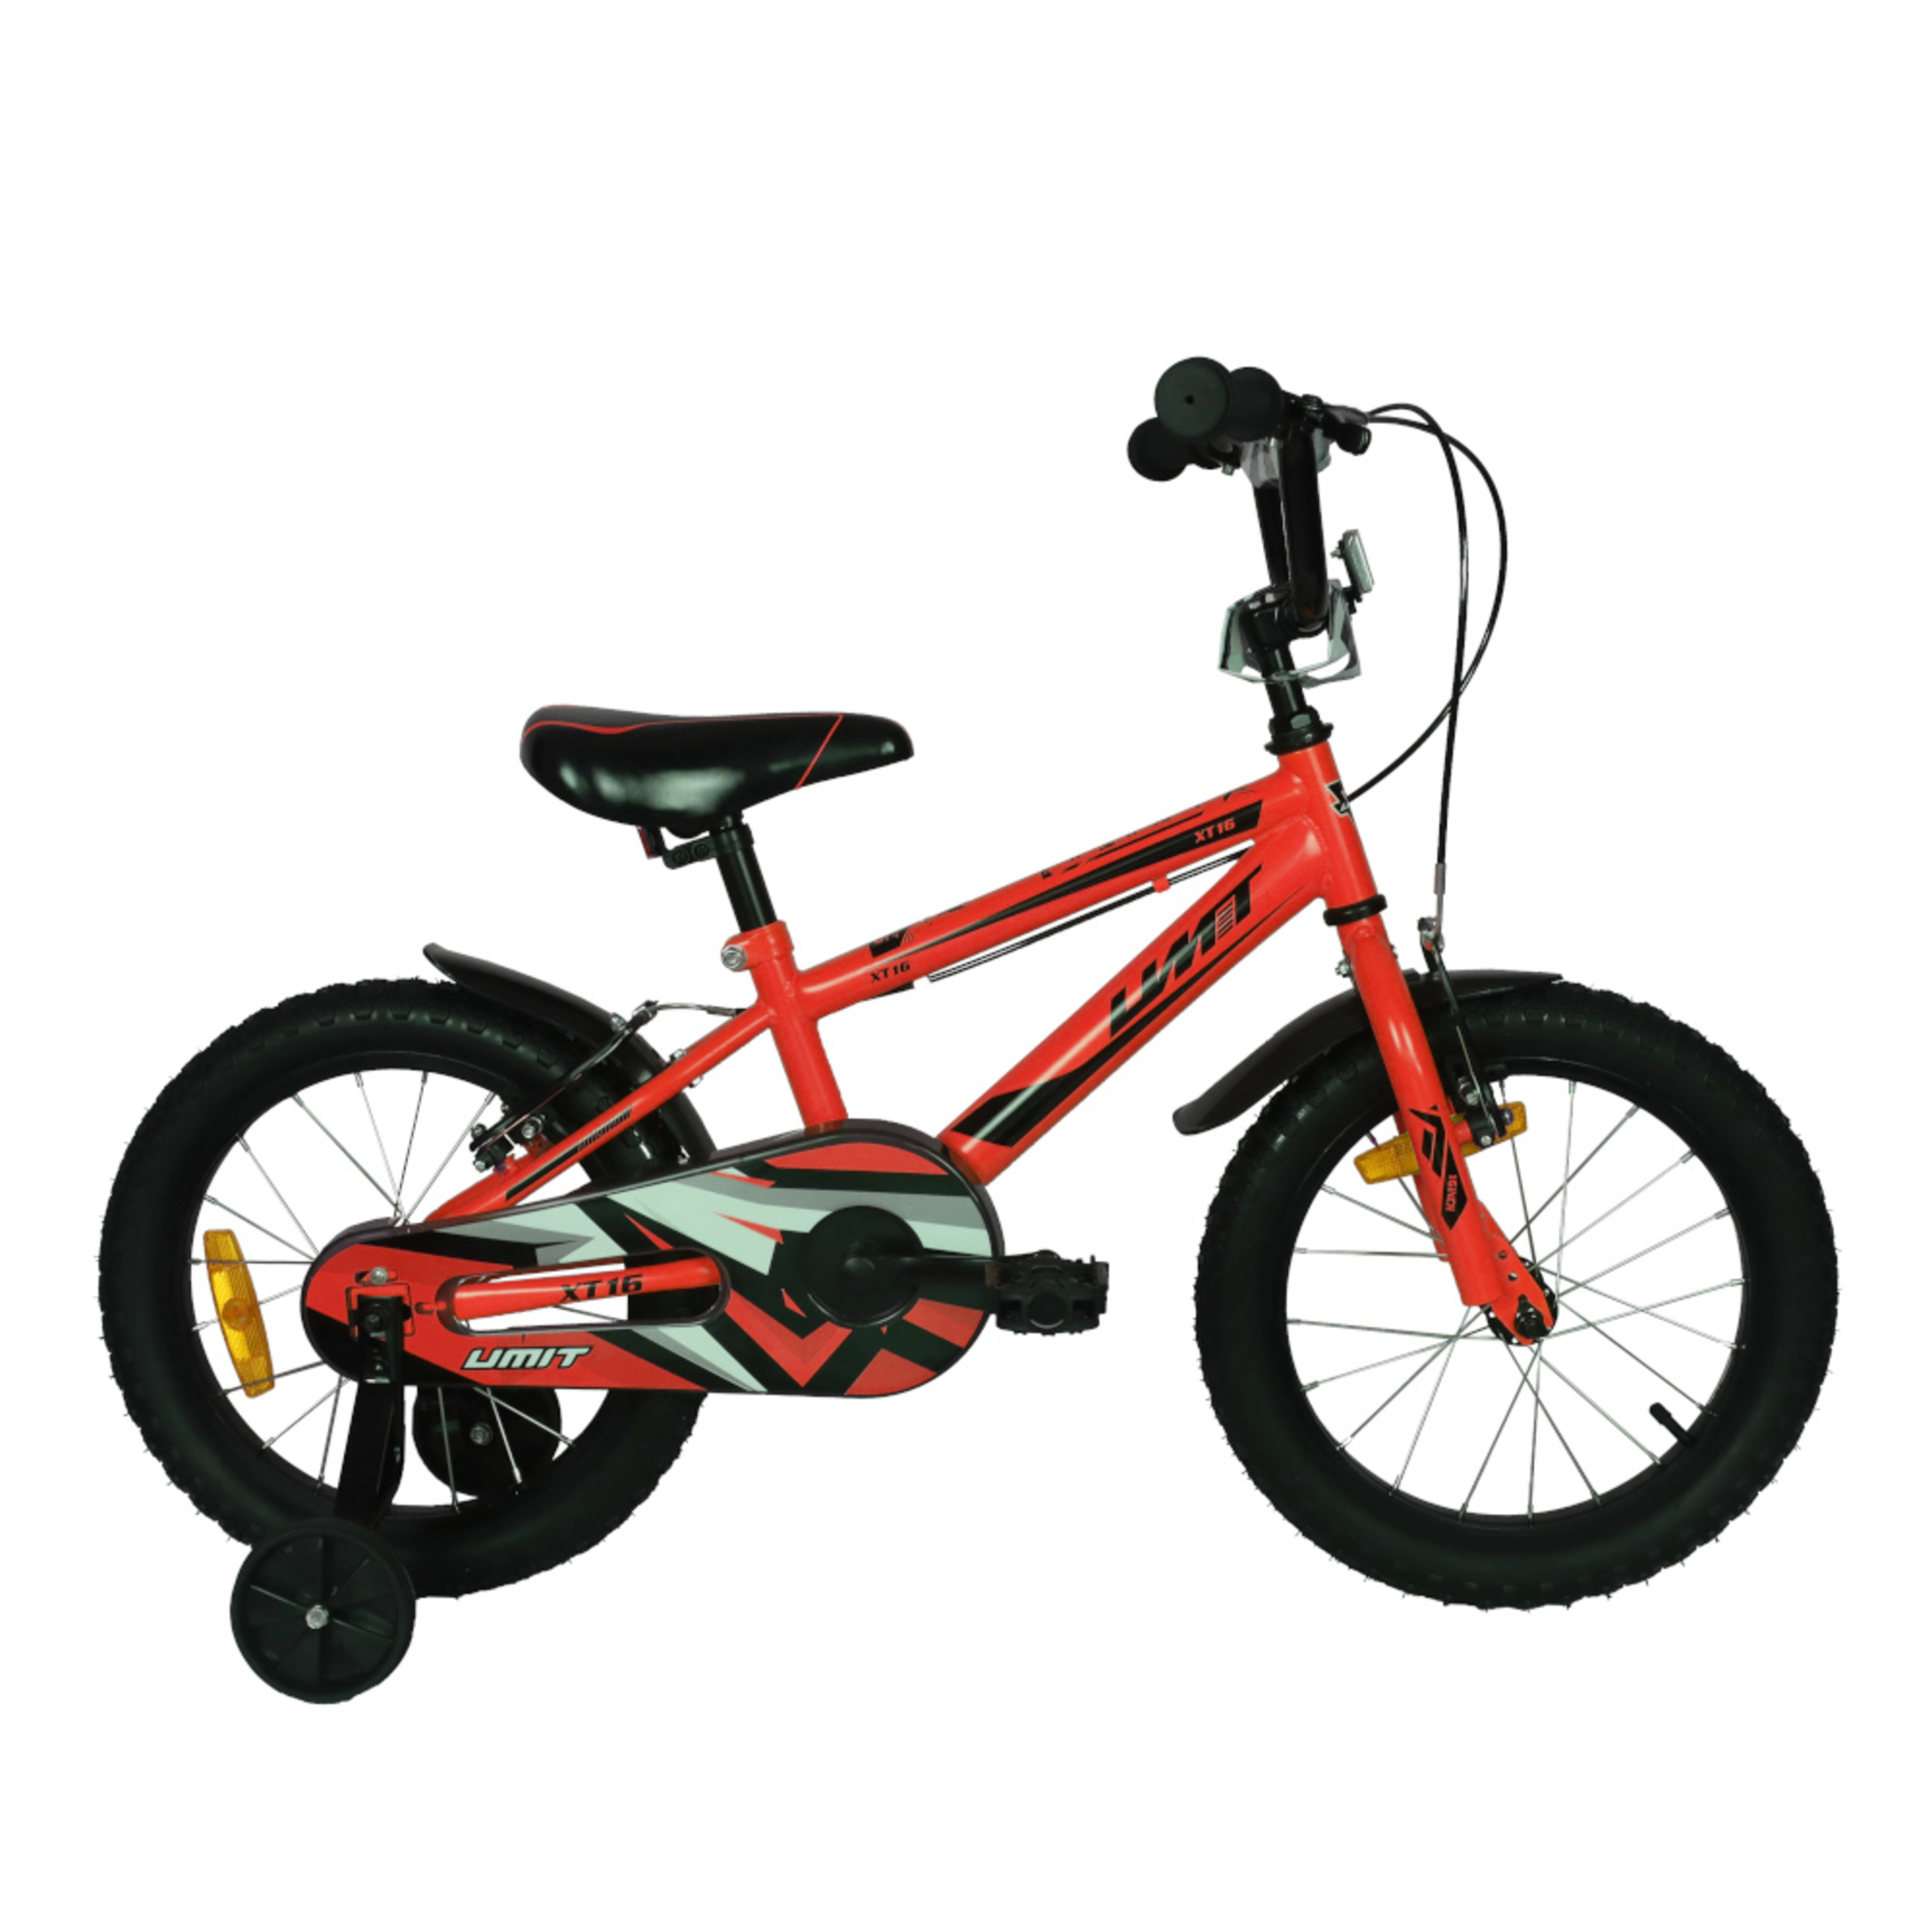 Bicicleta Montaña Umit Xt16 - rojo - 